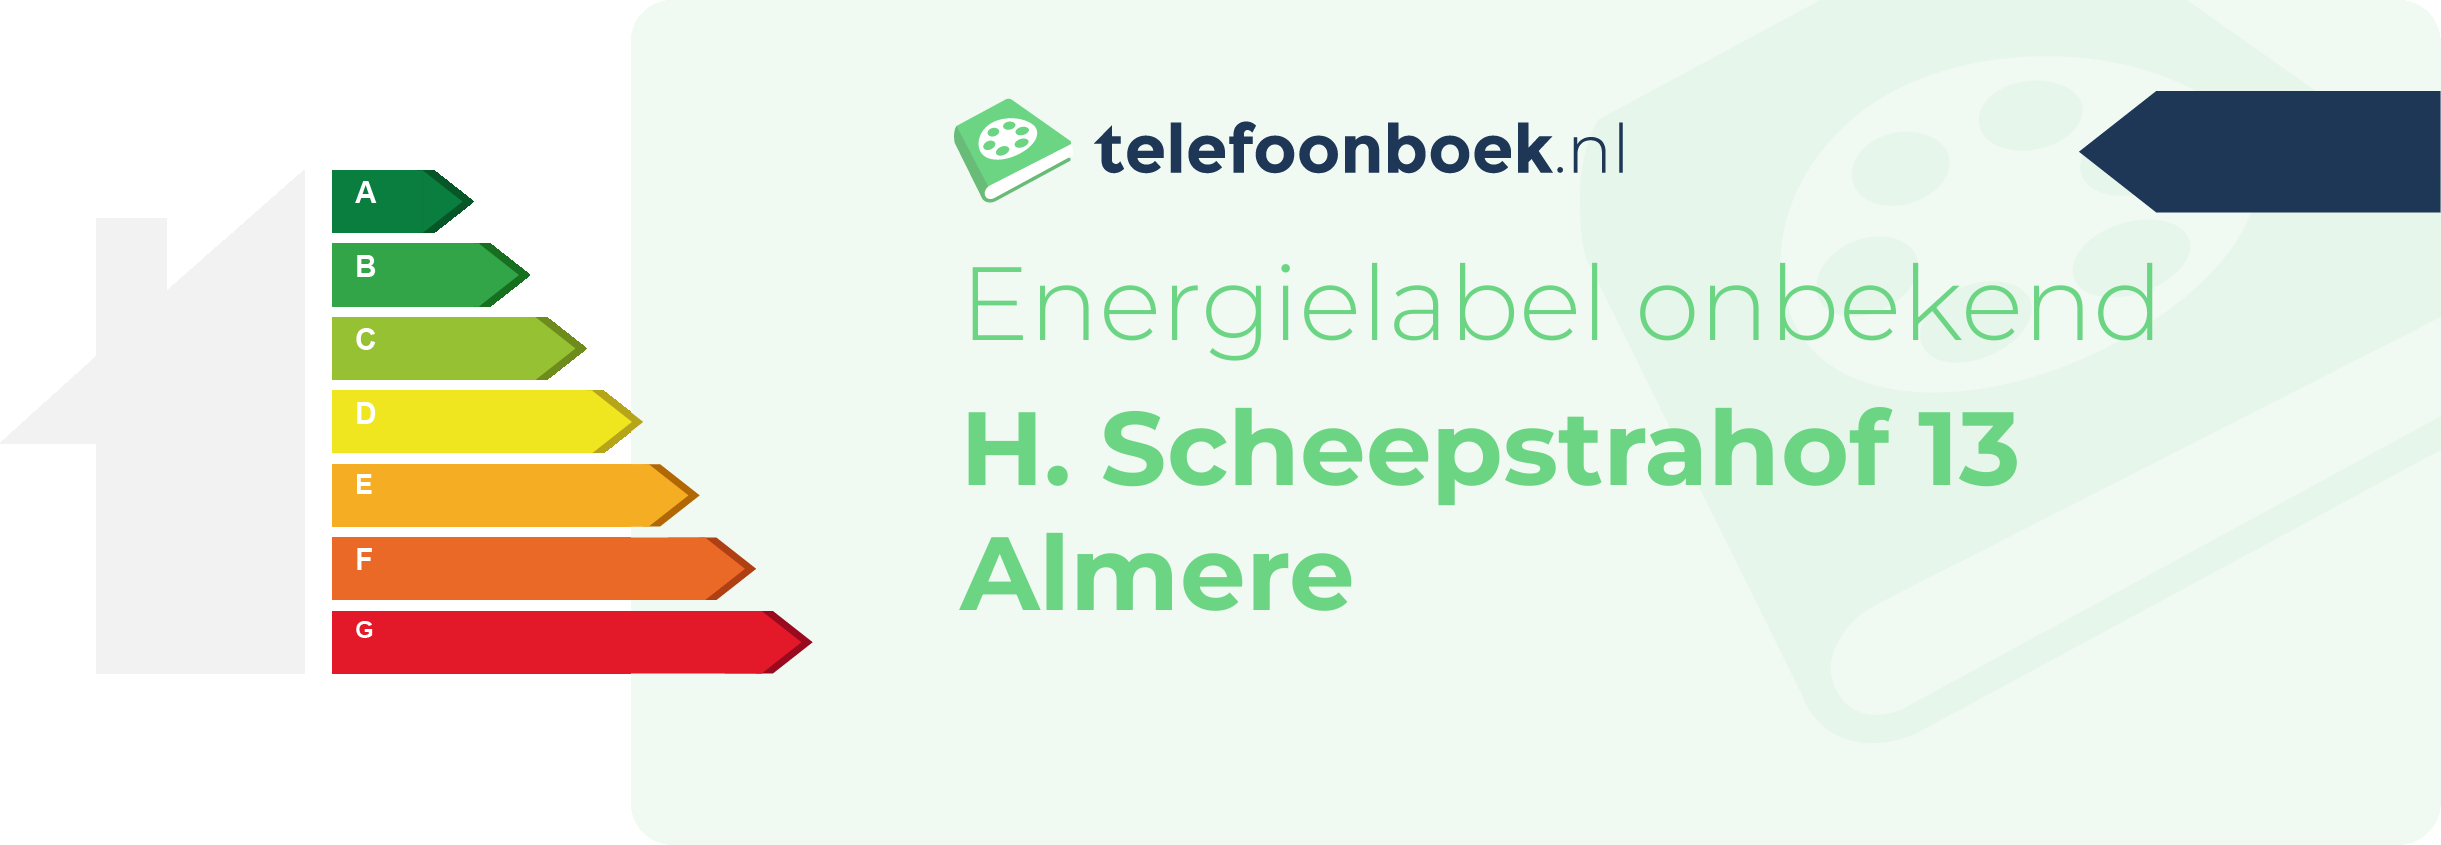 Energielabel H. Scheepstrahof 13 Almere